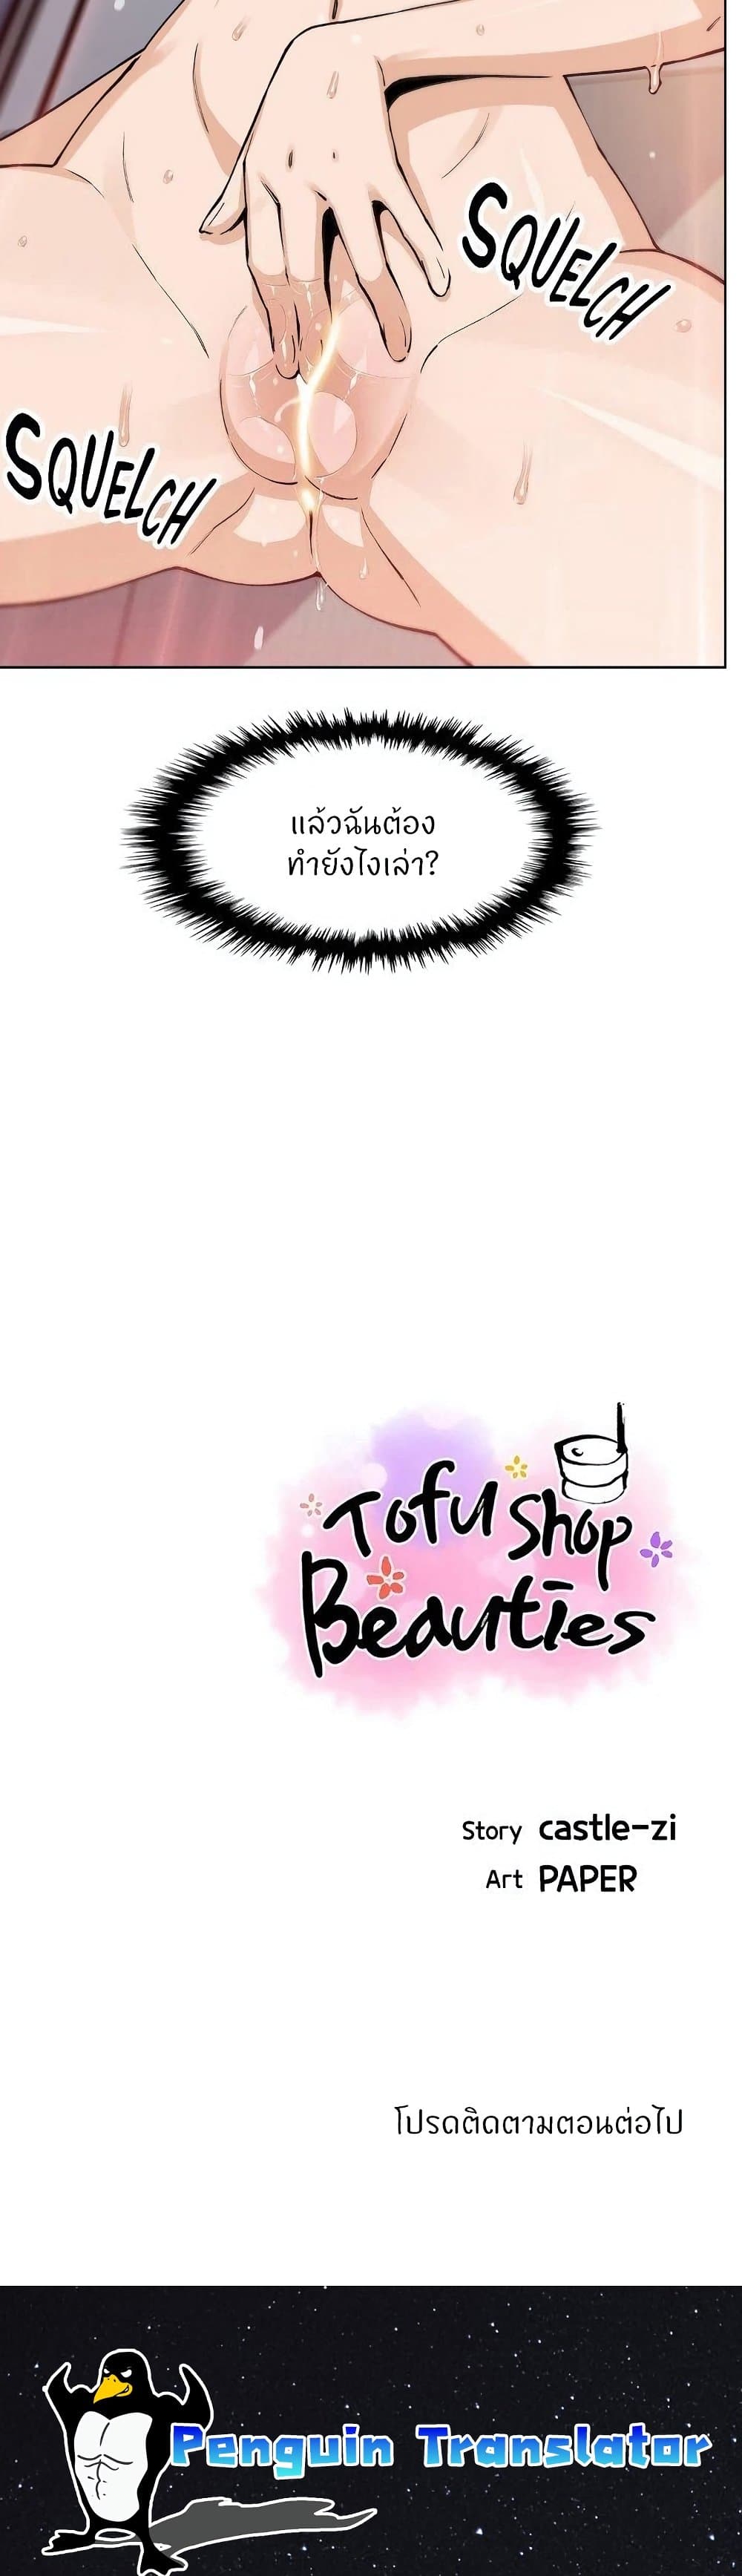 Tofu Shop Beauties39